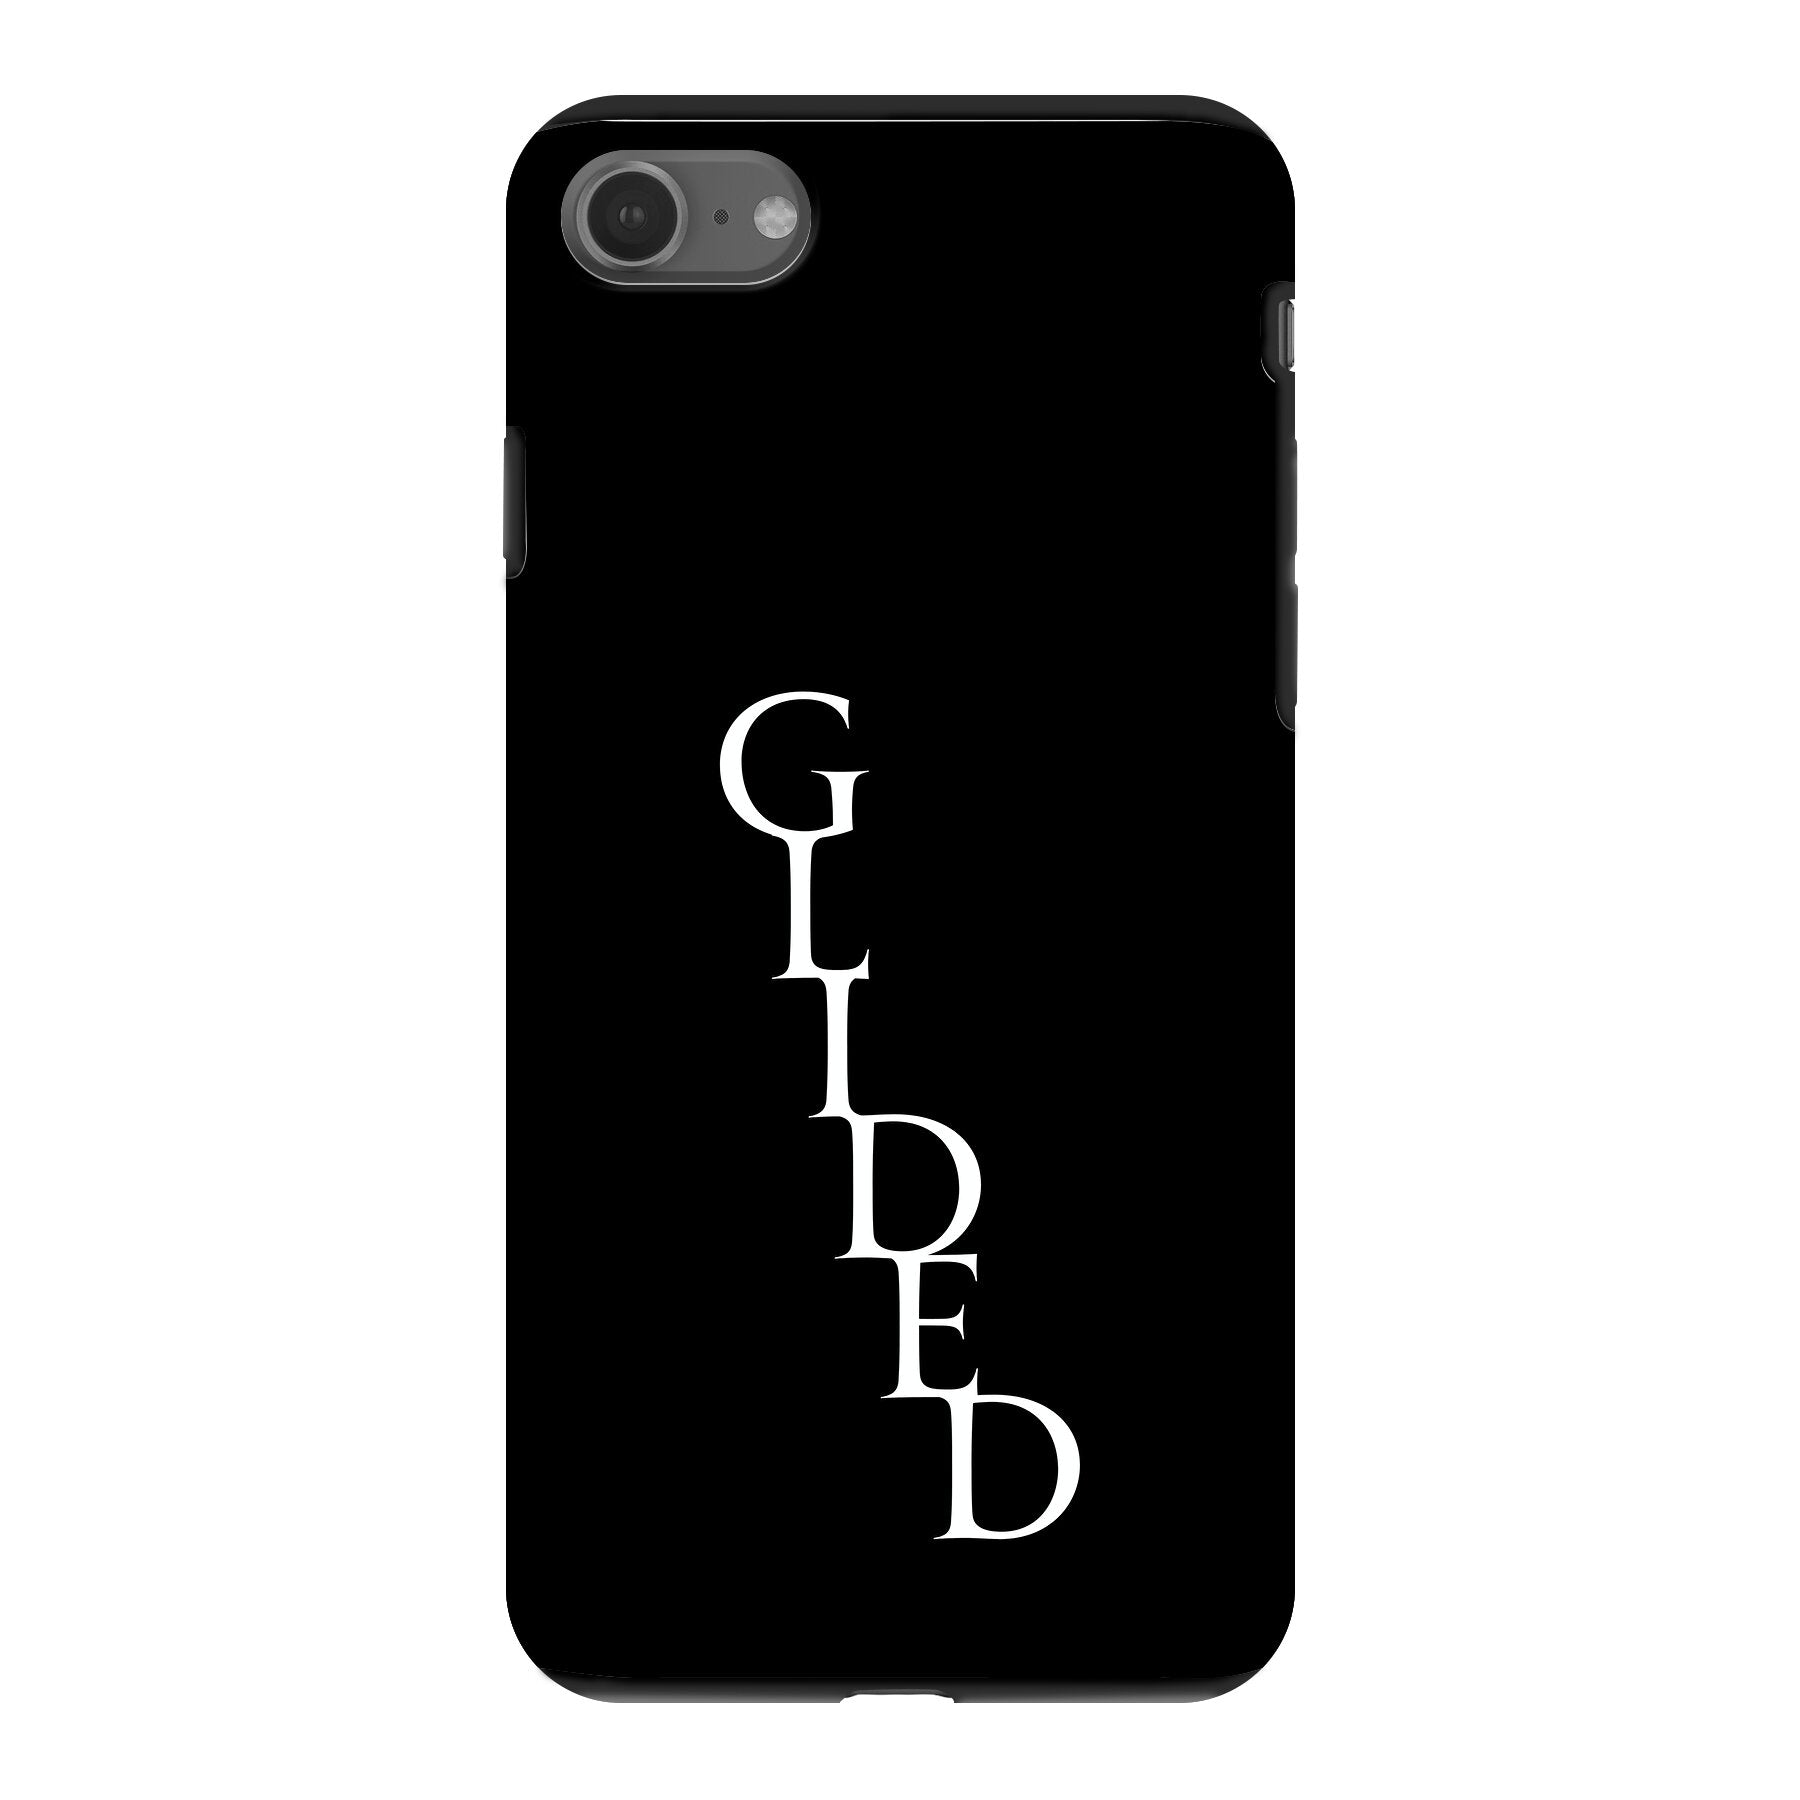 Premium Glided Exclusiv - iPhone SE 2022 Handyhülle - Soft case von Glided